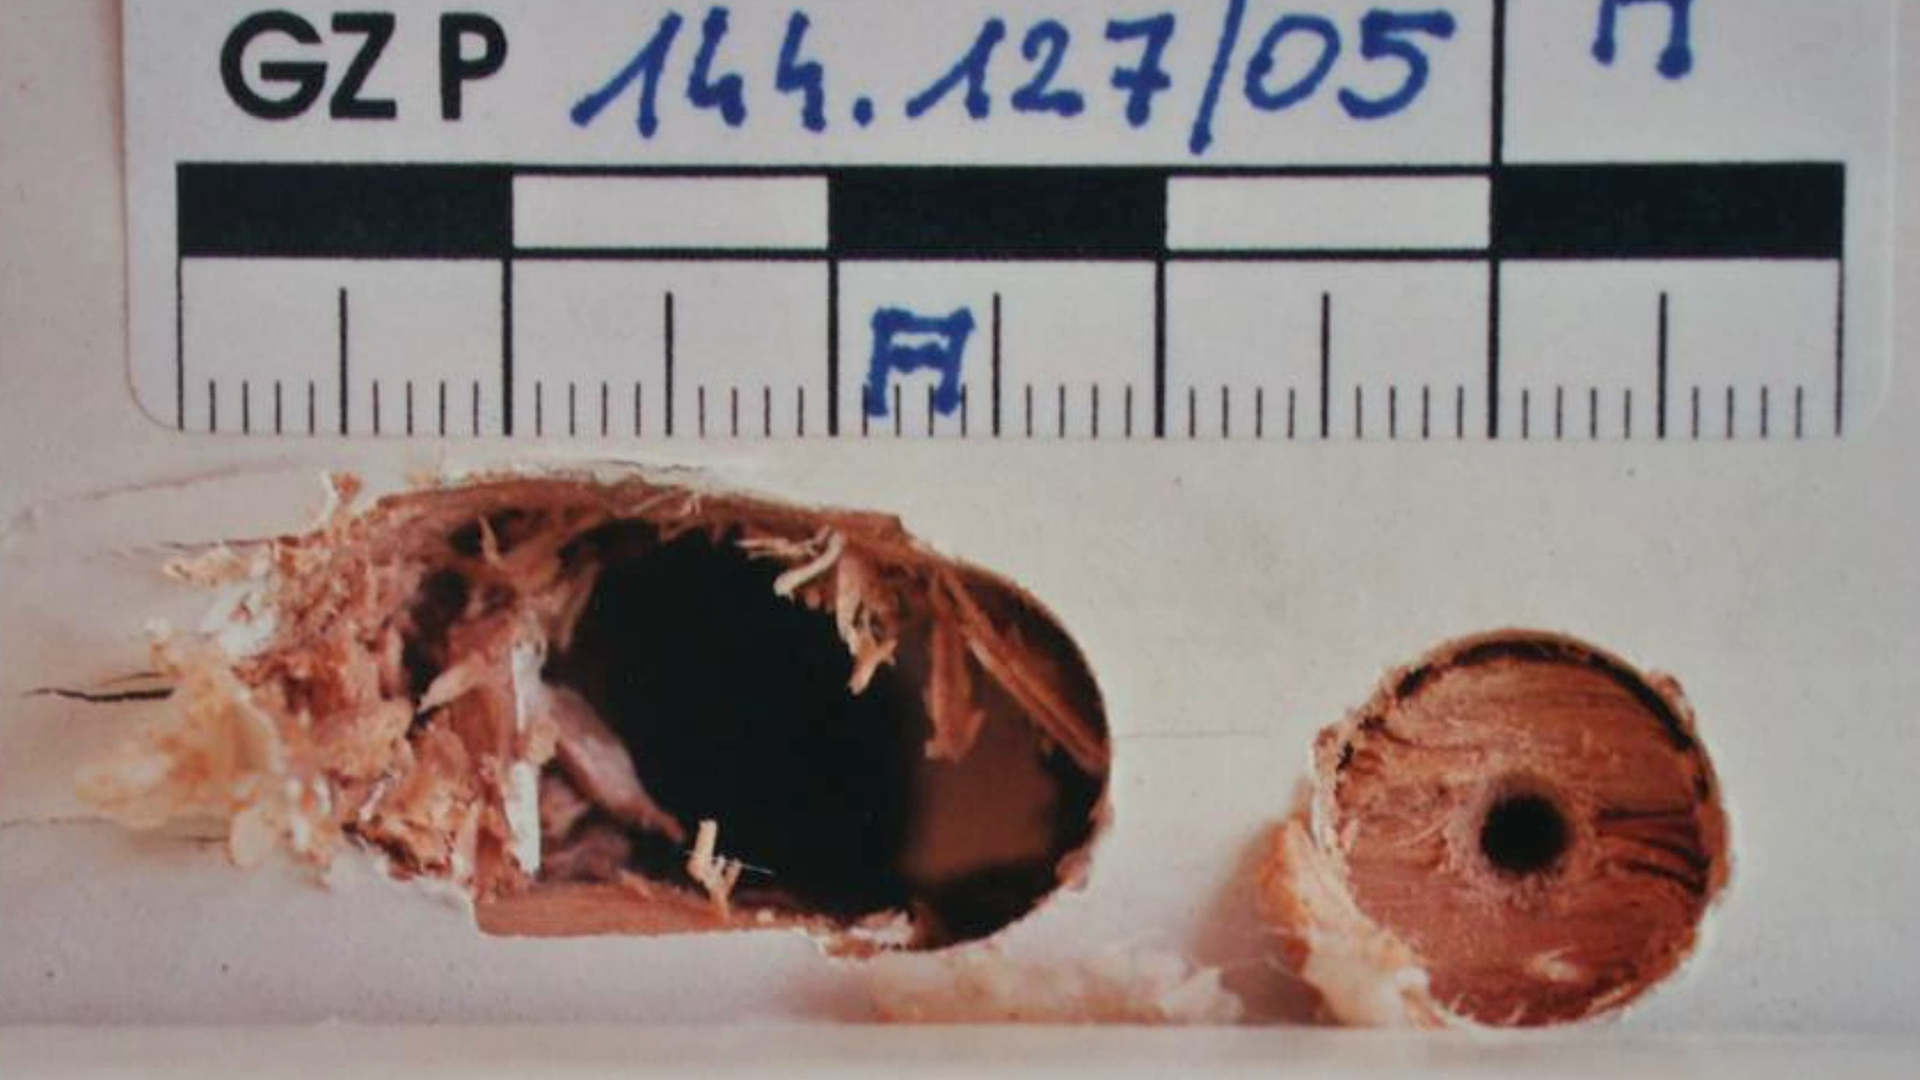 Bild aus der Polizeiakte zeigt von Einbrecher gebohrte Löcher in einem Holz-Fensterrahmen. Erkennunsgsdienstliche Markierungen am Bildrand. Schrifteinblendung "Polizeifoto" oben rechts.